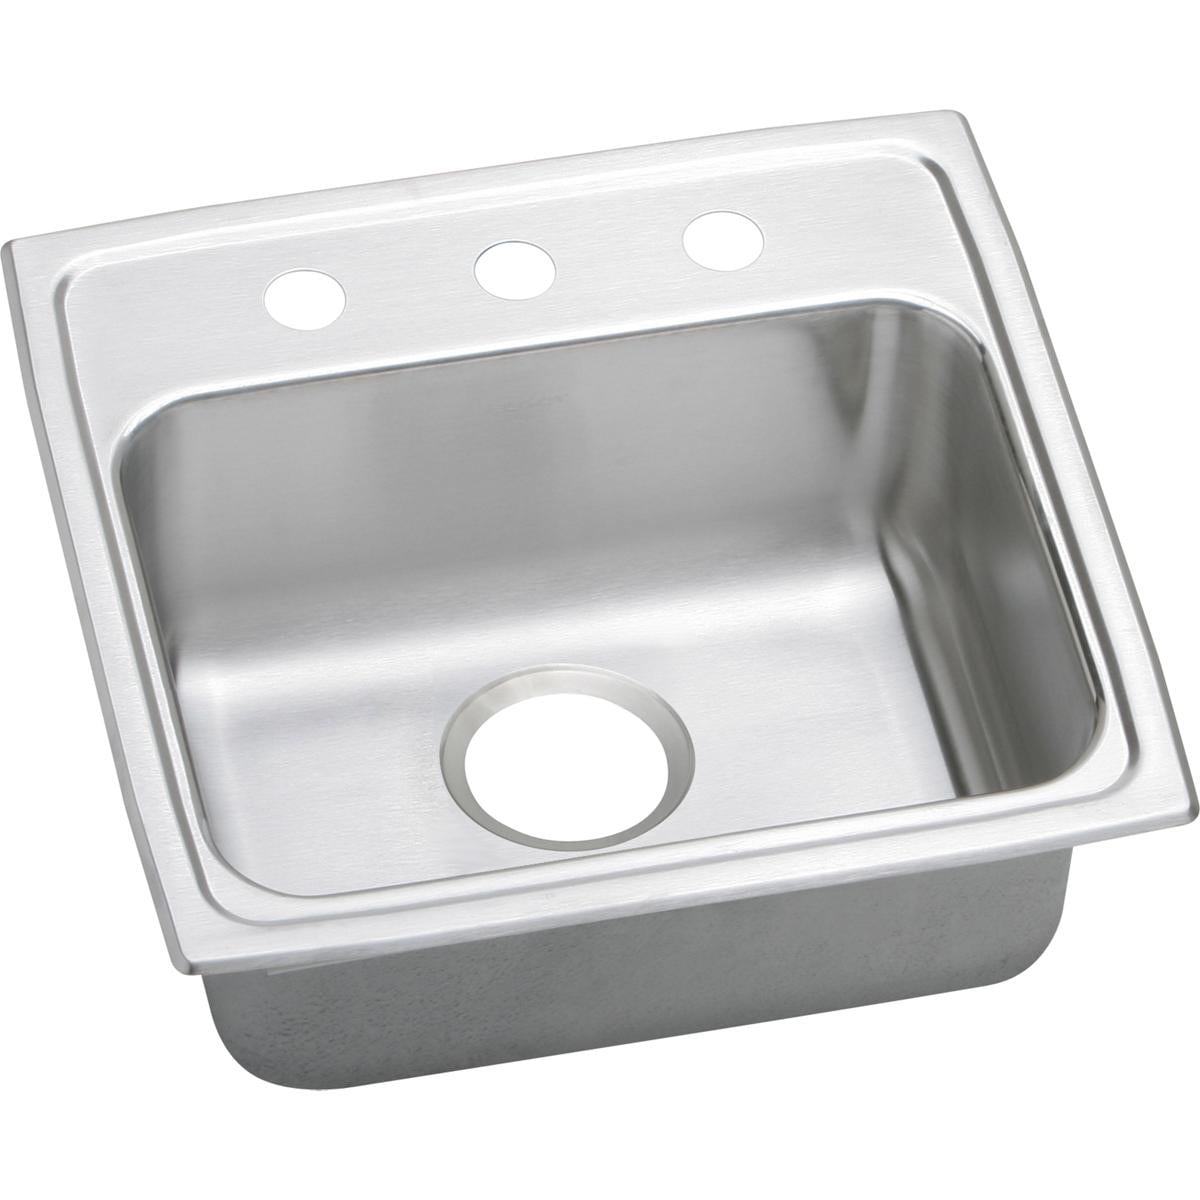 LRAD1919553 20"" Top Mount Self-Rim Single Bowl 18-Gauge ADA Compliant Stainless Steel Sink With 3 -  Elkay